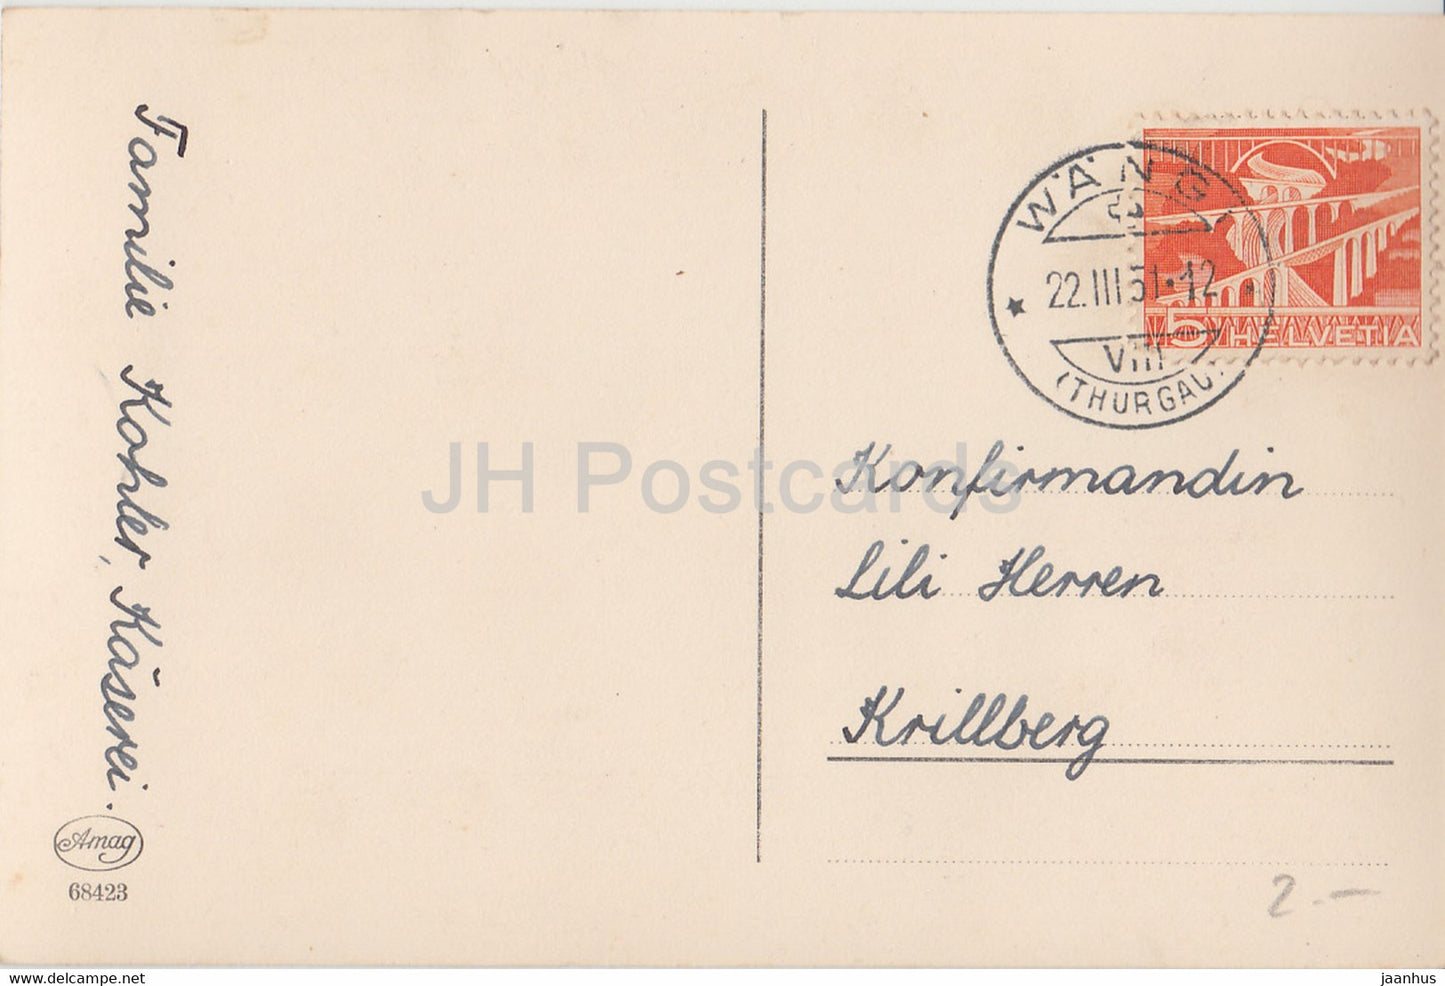 Grußkarte - Die besten Glückwünsche zur Konfirmation - Nelke - Blumen - 1951 - alte Postkarte - Deutschland - gebraucht